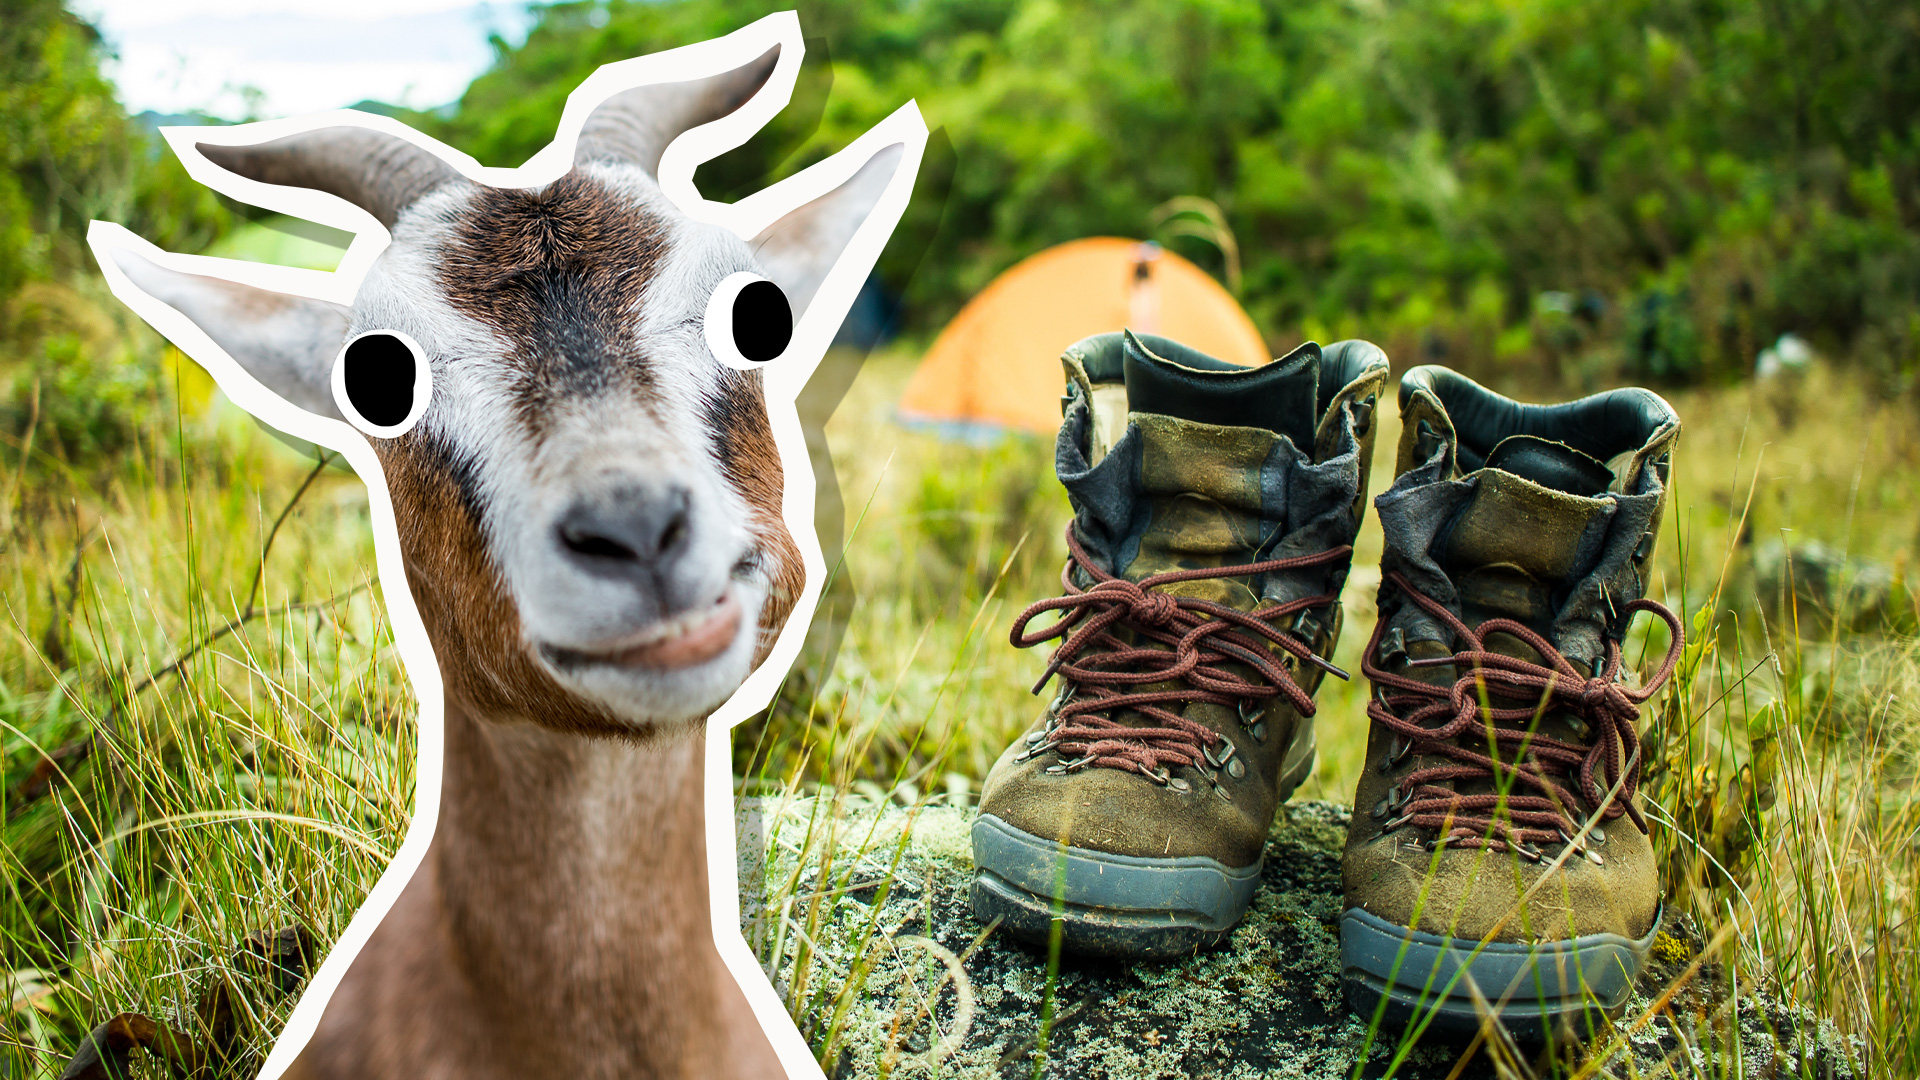 A goat next to a campsite